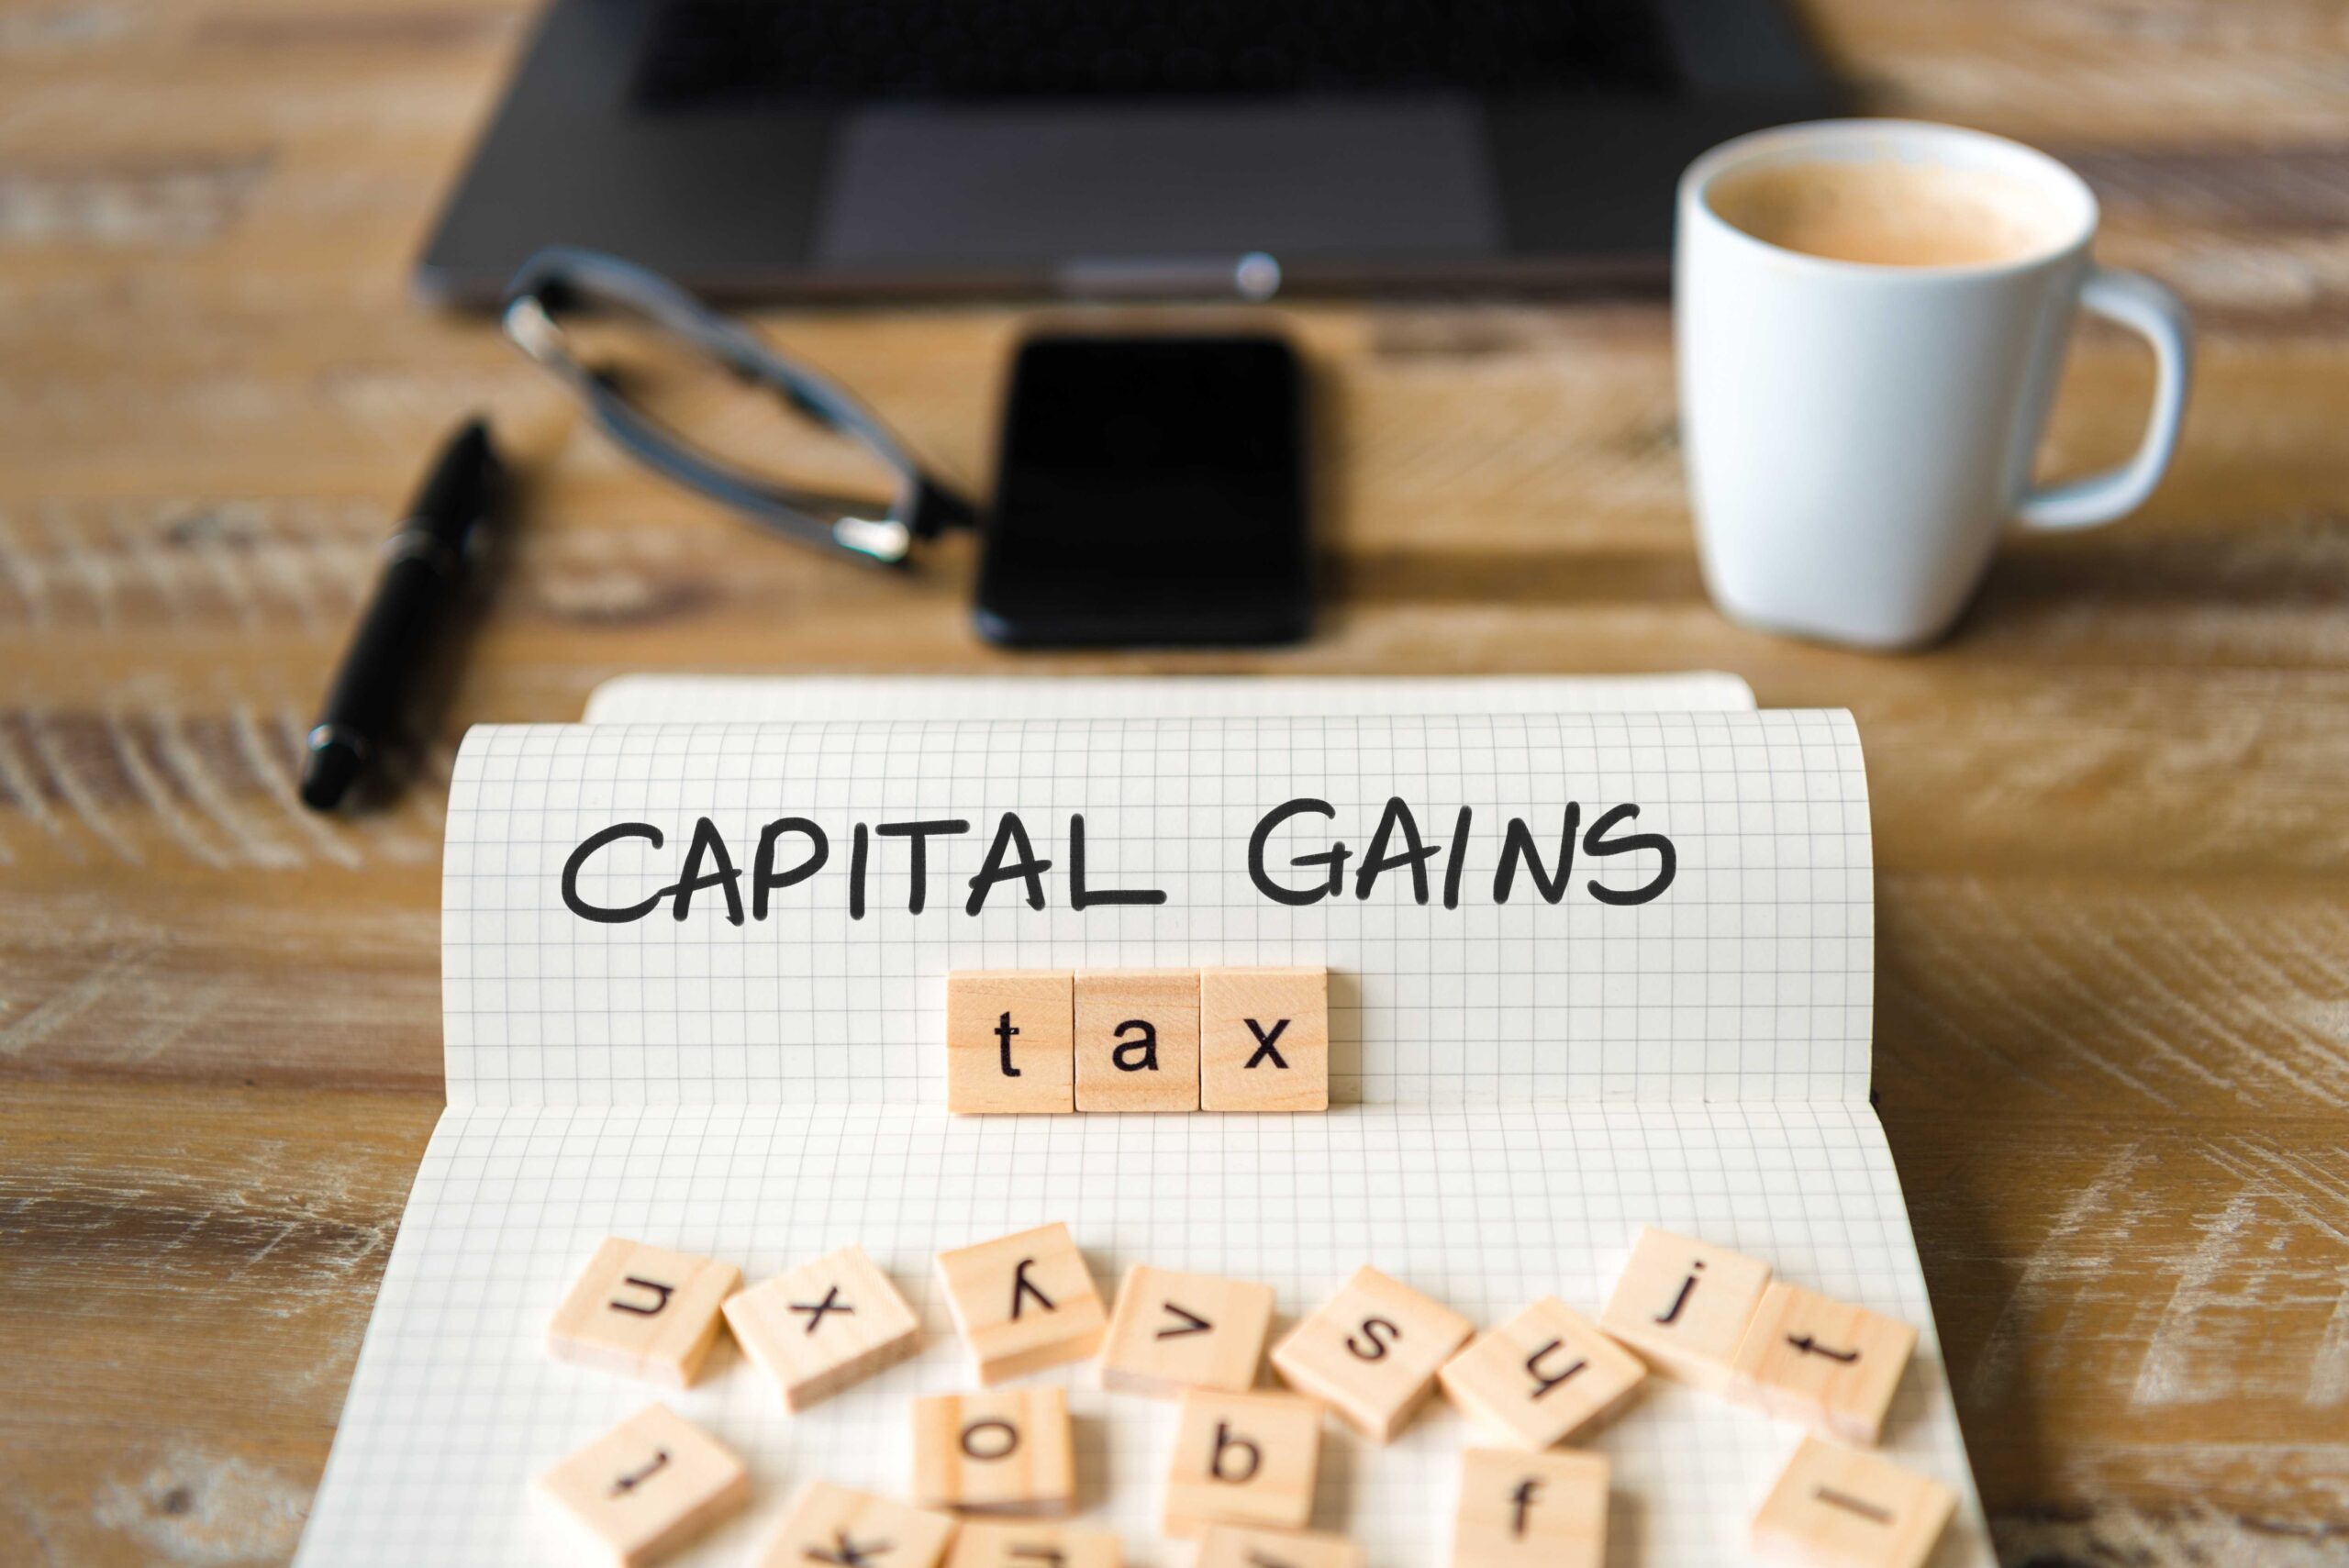 Plan ahead to avoid Capital Gains Tax